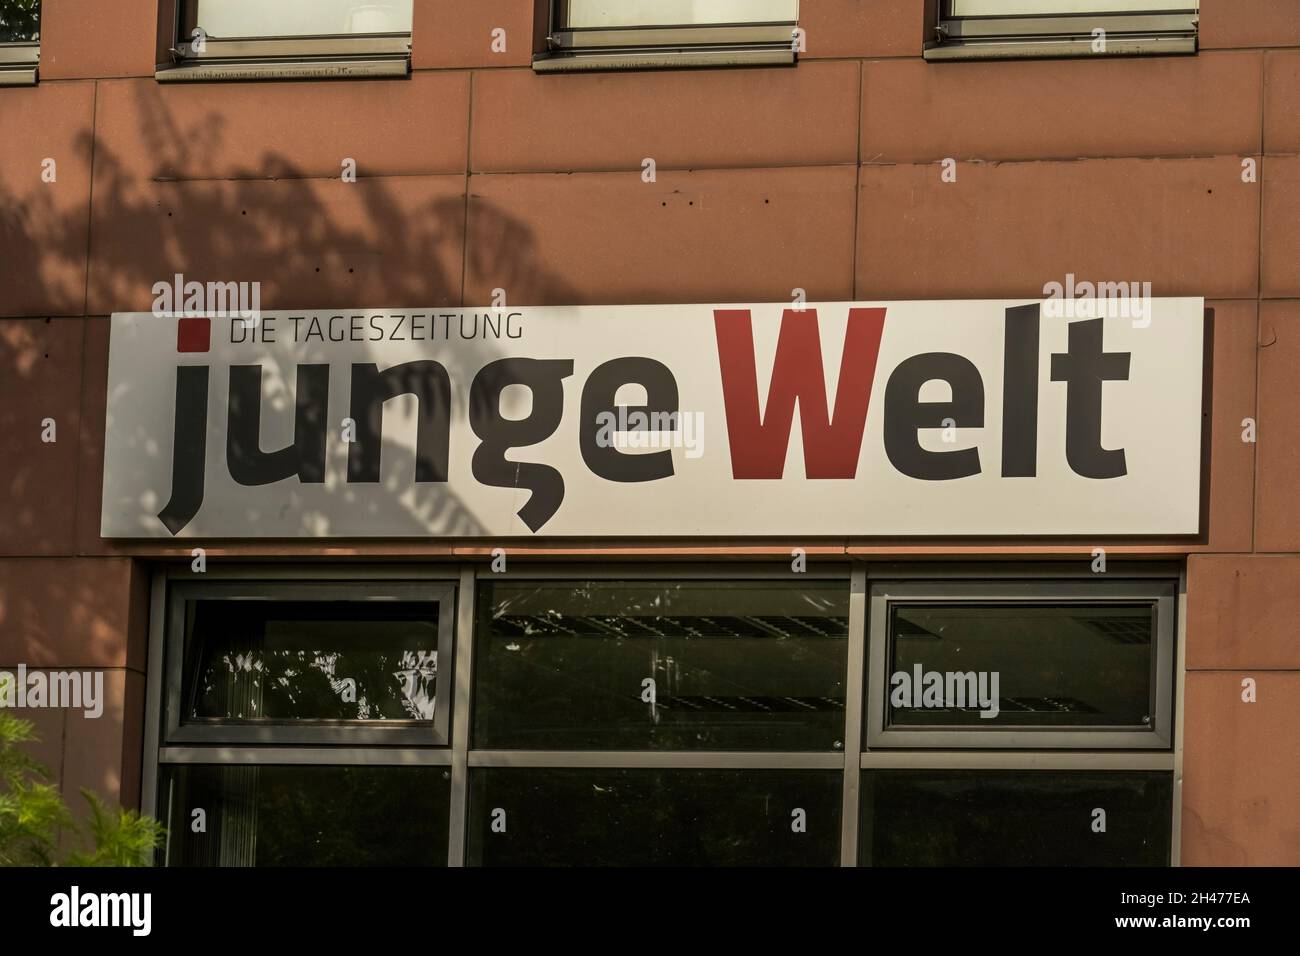 Verlag und Redaktion Zeitung 'Junge Welt', Weydingerstraße, Mitte, Berlin, Allemagne Banque D'Images